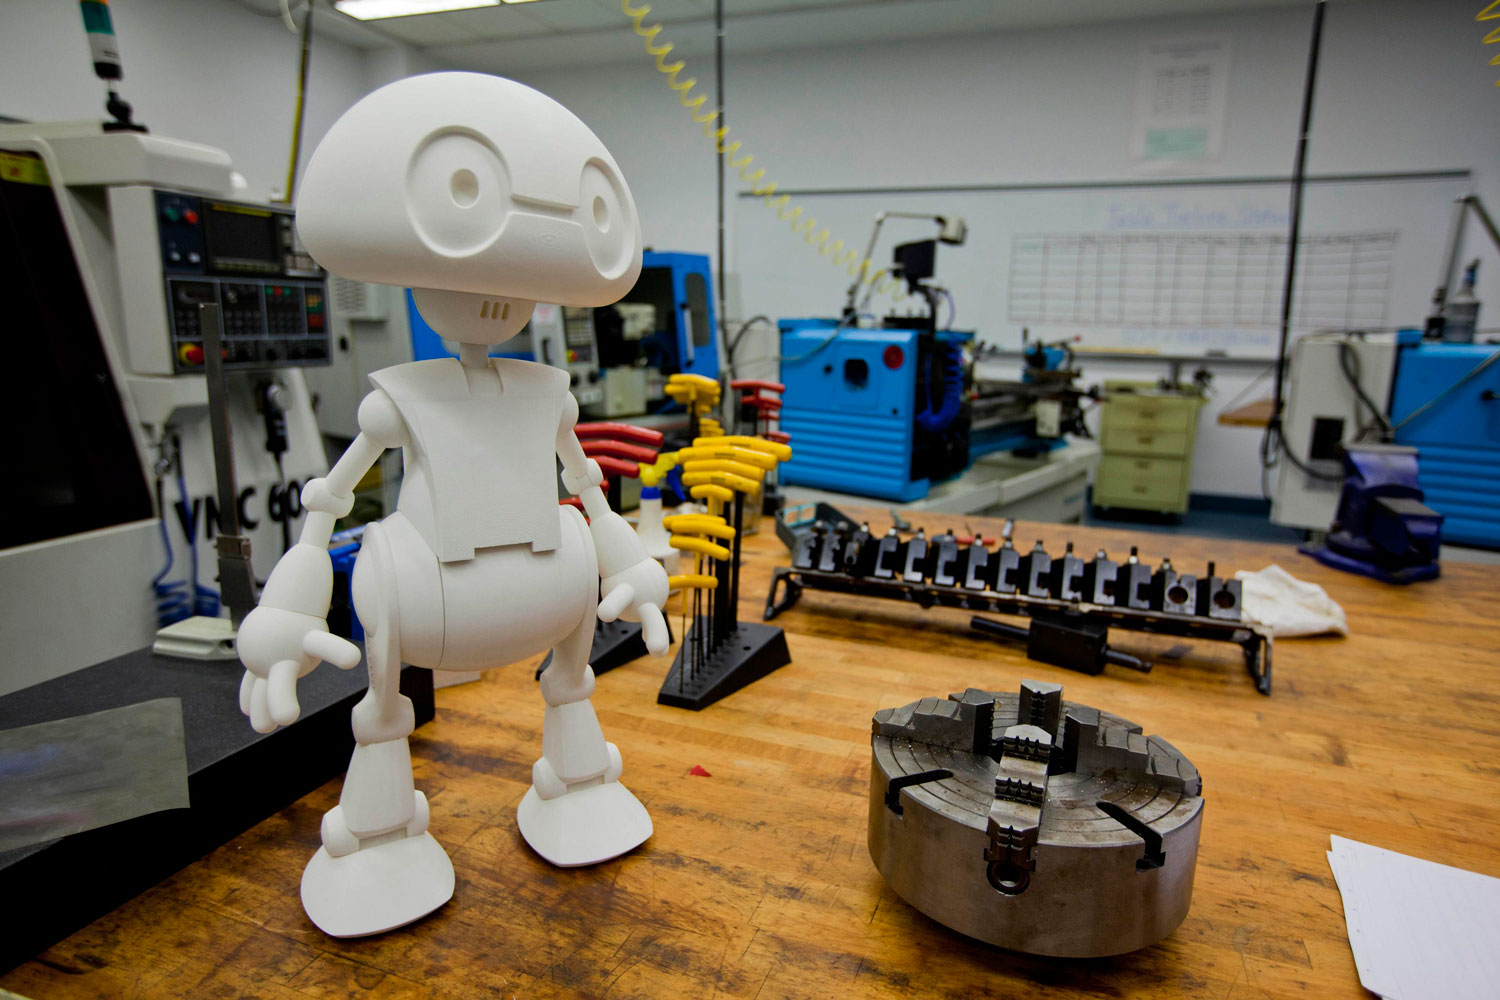 Intel quiere que su robot Jimmy esté disponible para imprimir en 3D a finales de año.